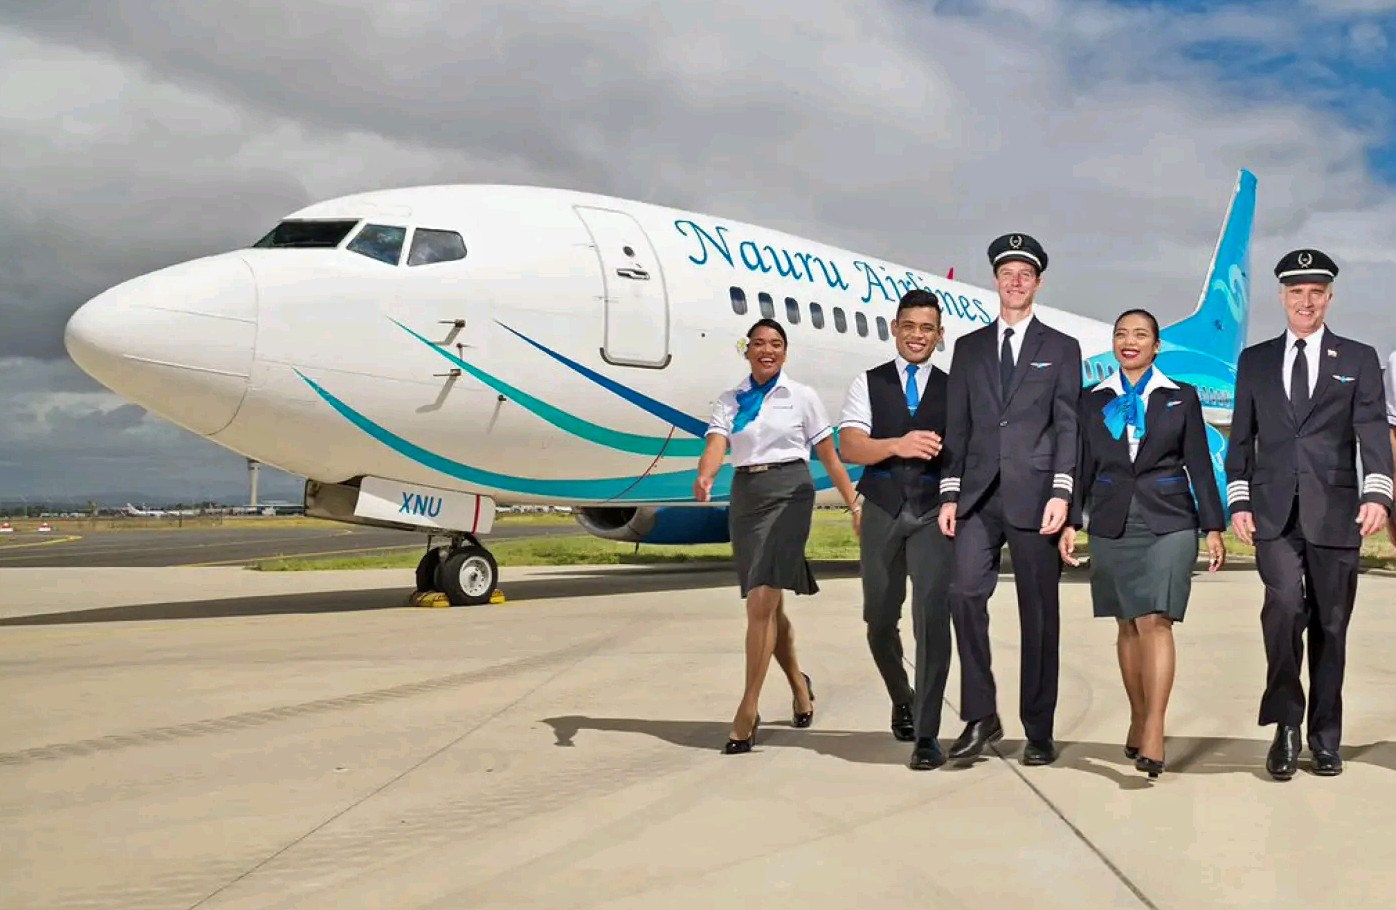 Nauru-Airlines-cleaning-partnership